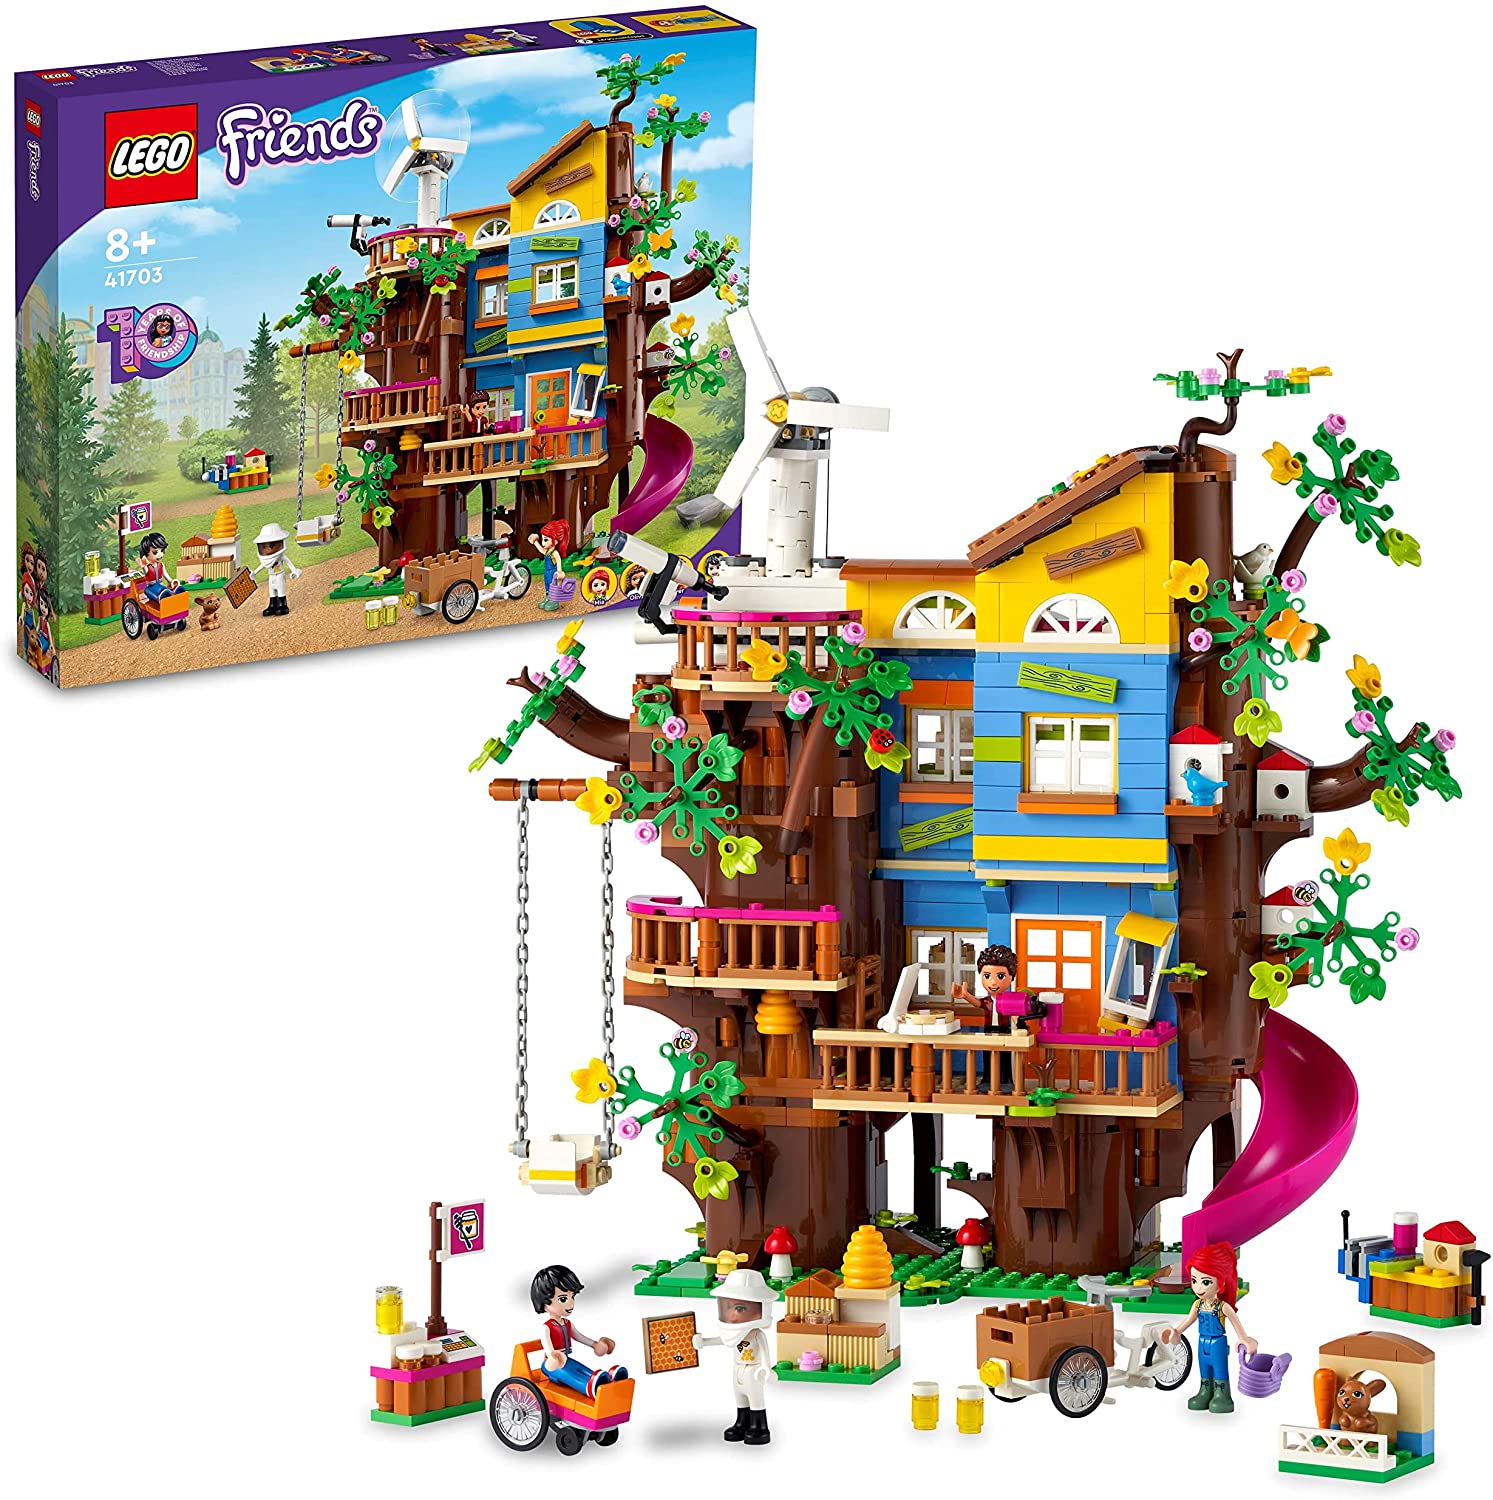 LEGO Friends friendship tree house - 41703 LEGO konstruktors